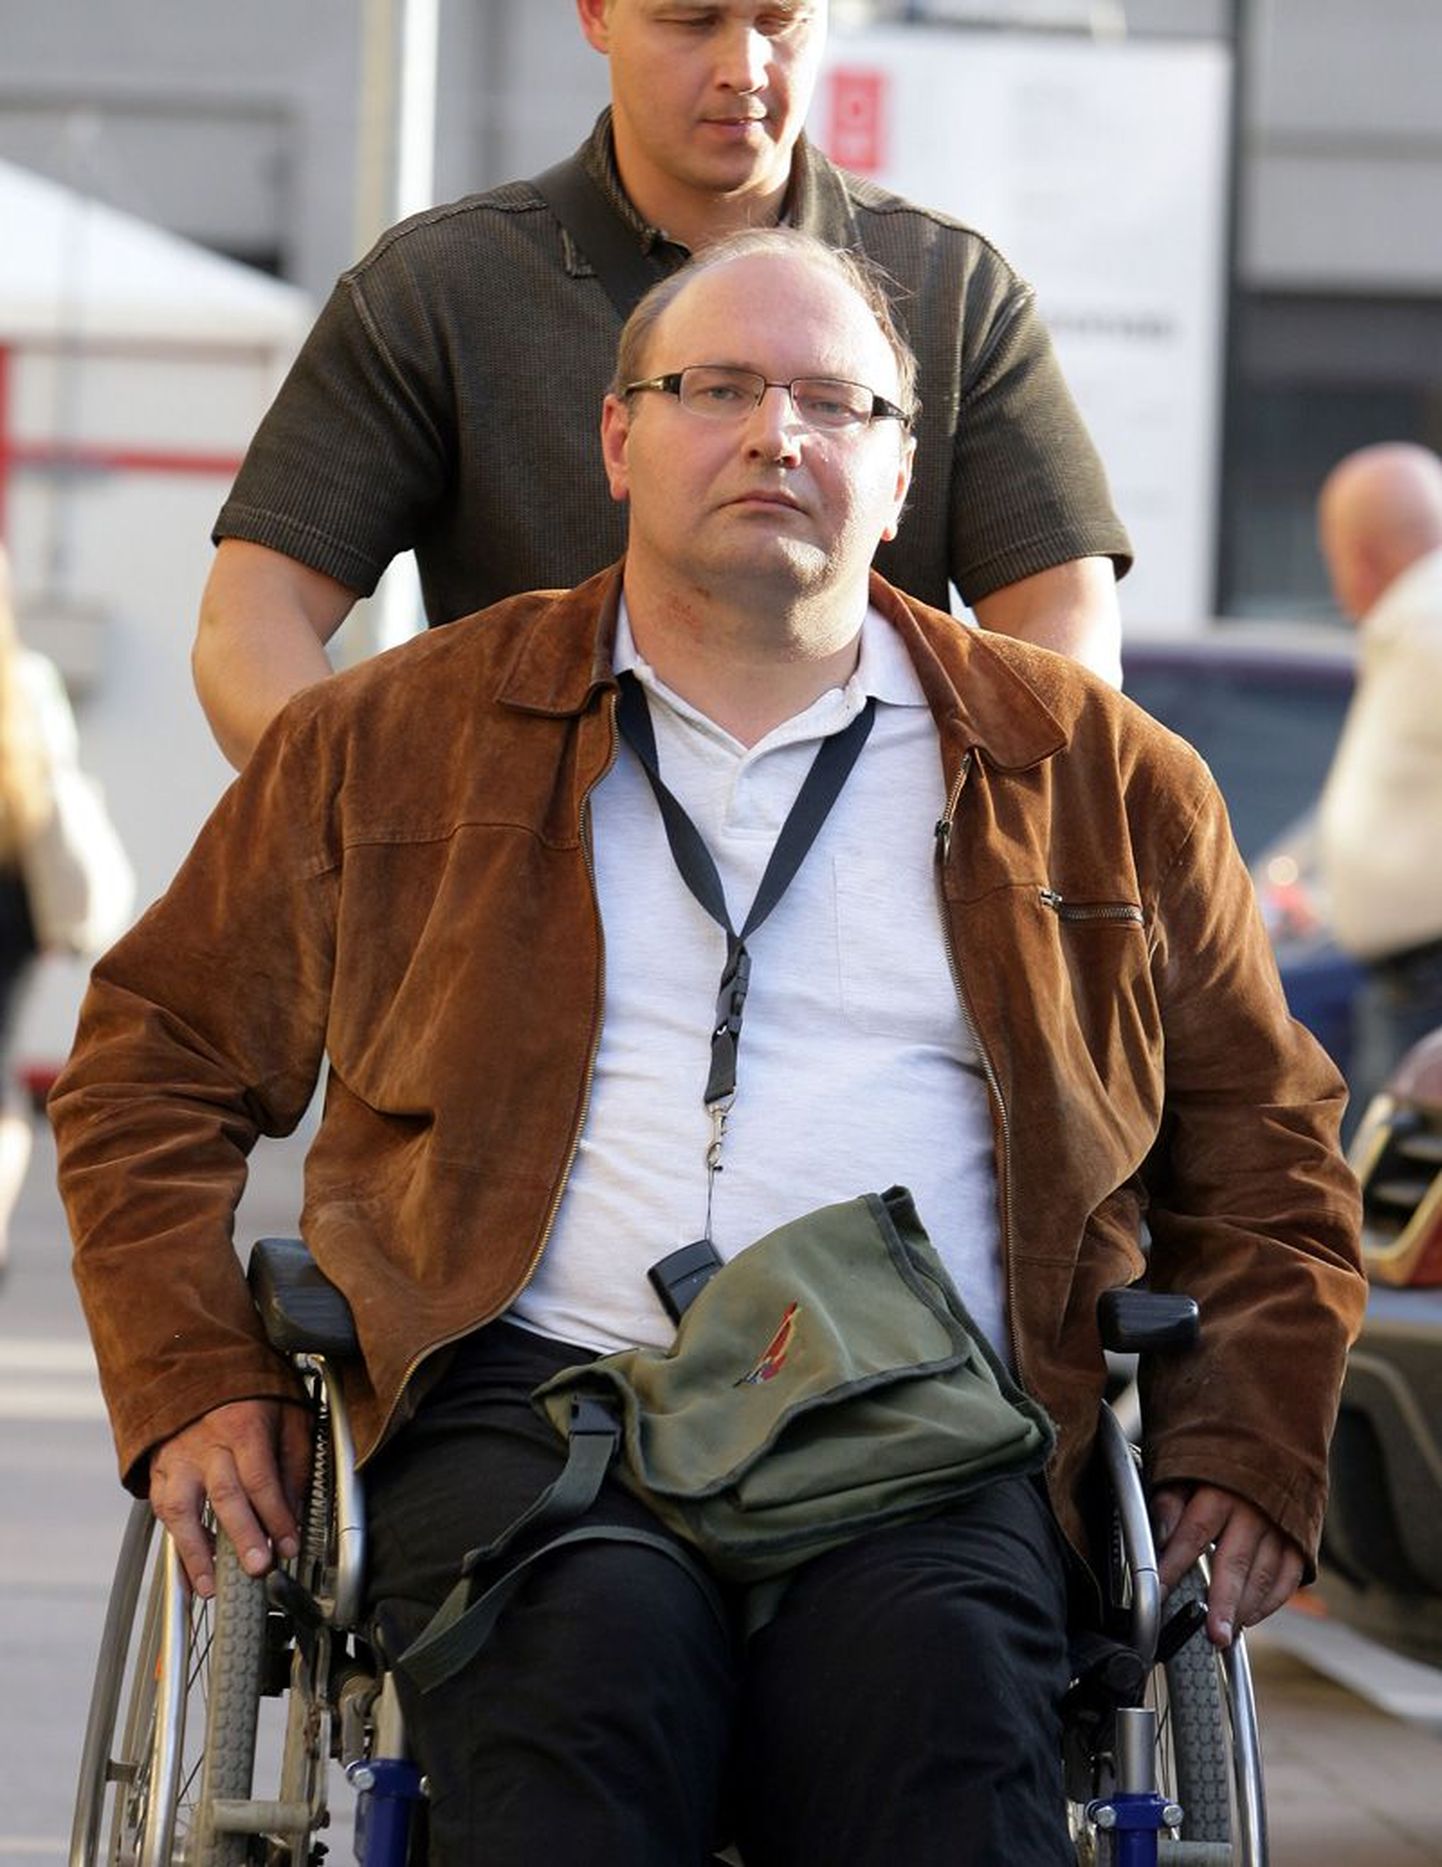 Medininkai rünnakus invaliidistunud Tomas Šernas jäi ainsana tragöödias ellu.